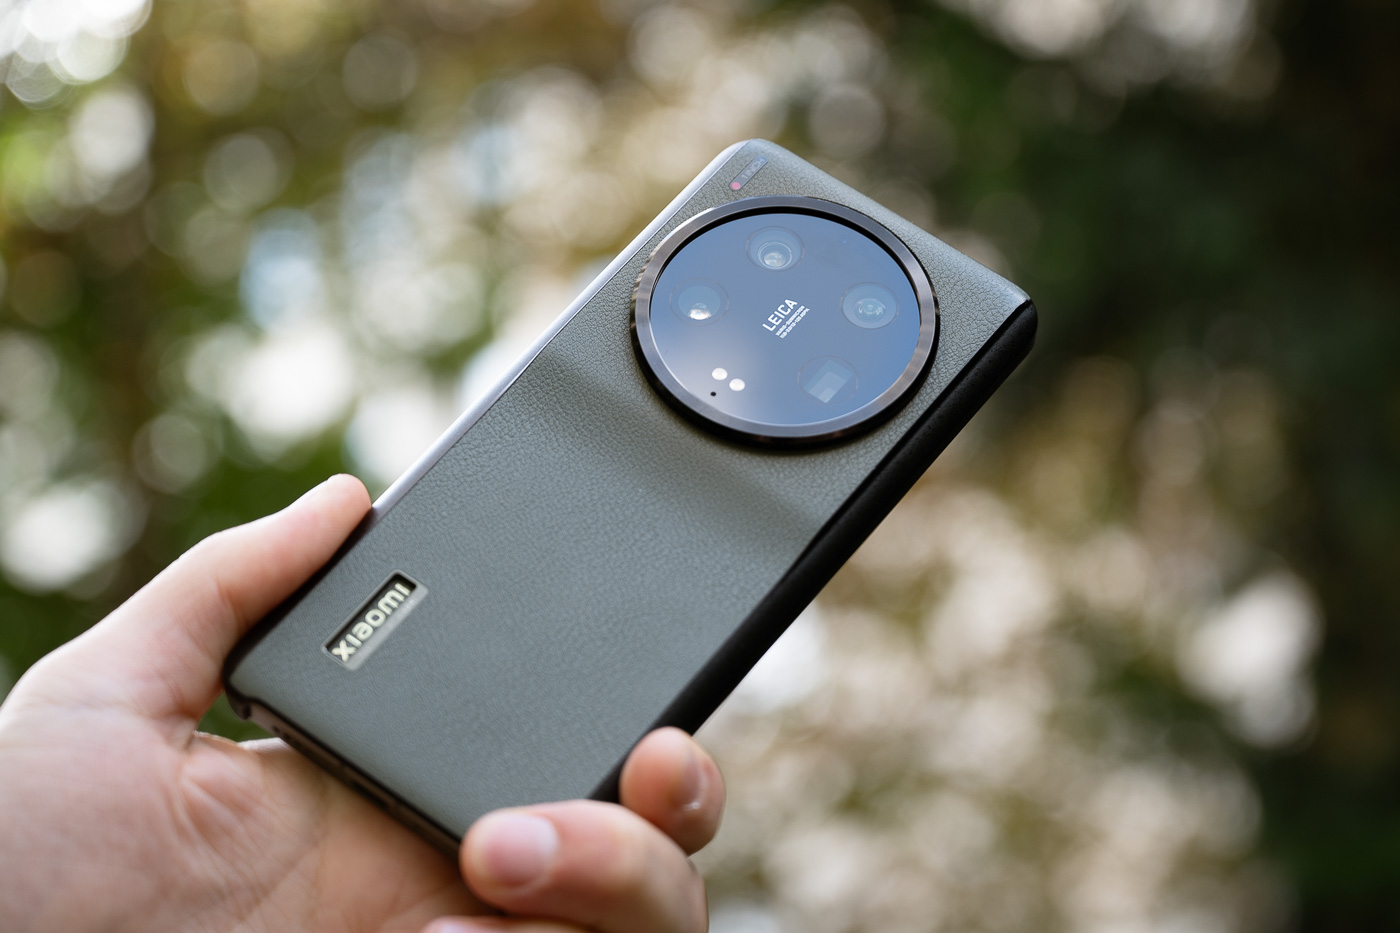 5 accessoires pour portable – Comment améliorer ses photos sur smartphone?